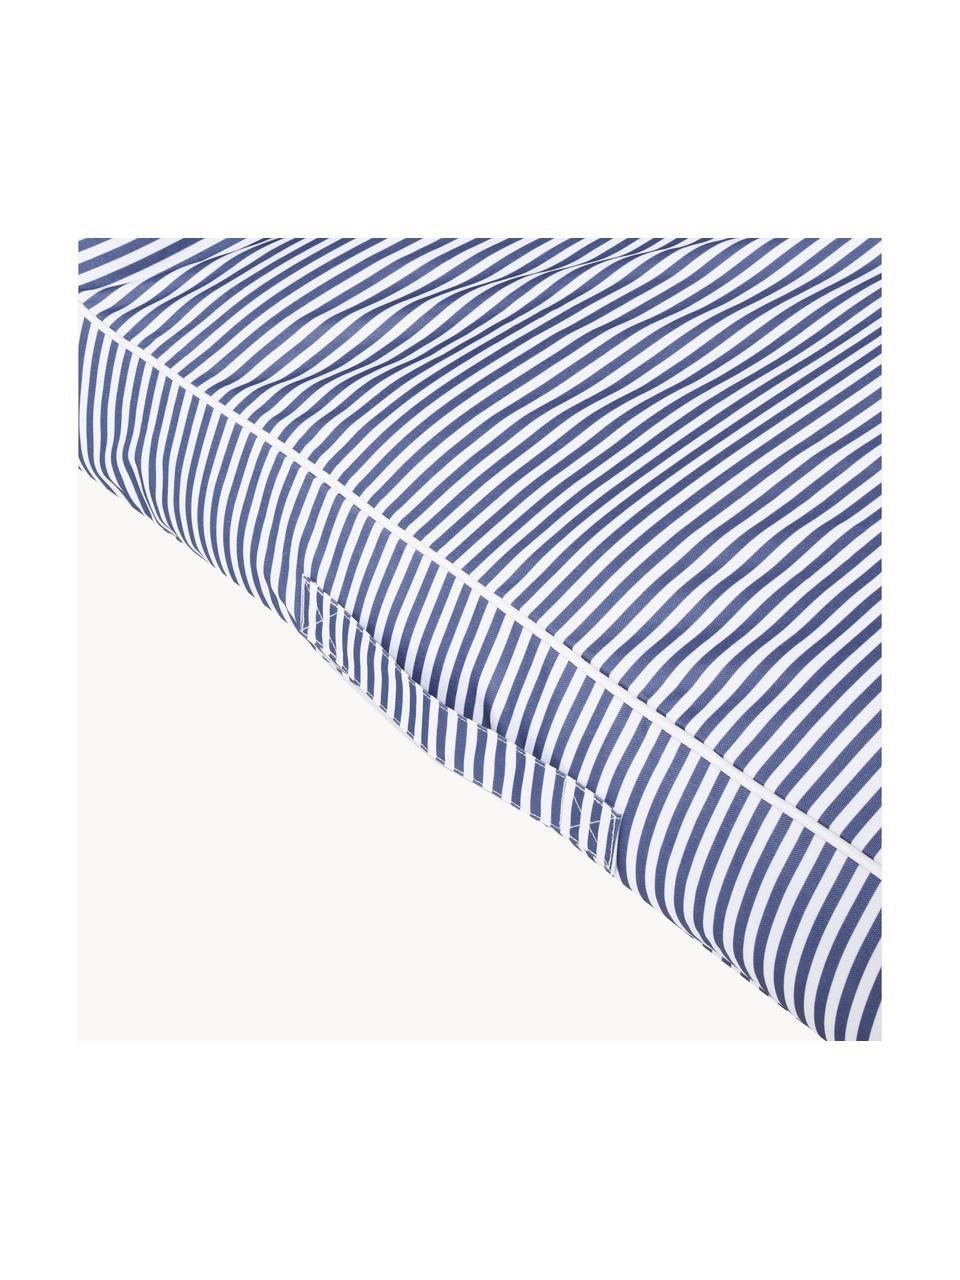 Matelas gonflable Le Weekend, 60 % plastique PVC, 40 % polyester, Bleu foncé, blanc, rayé, larg. 85 x long. 180 cm